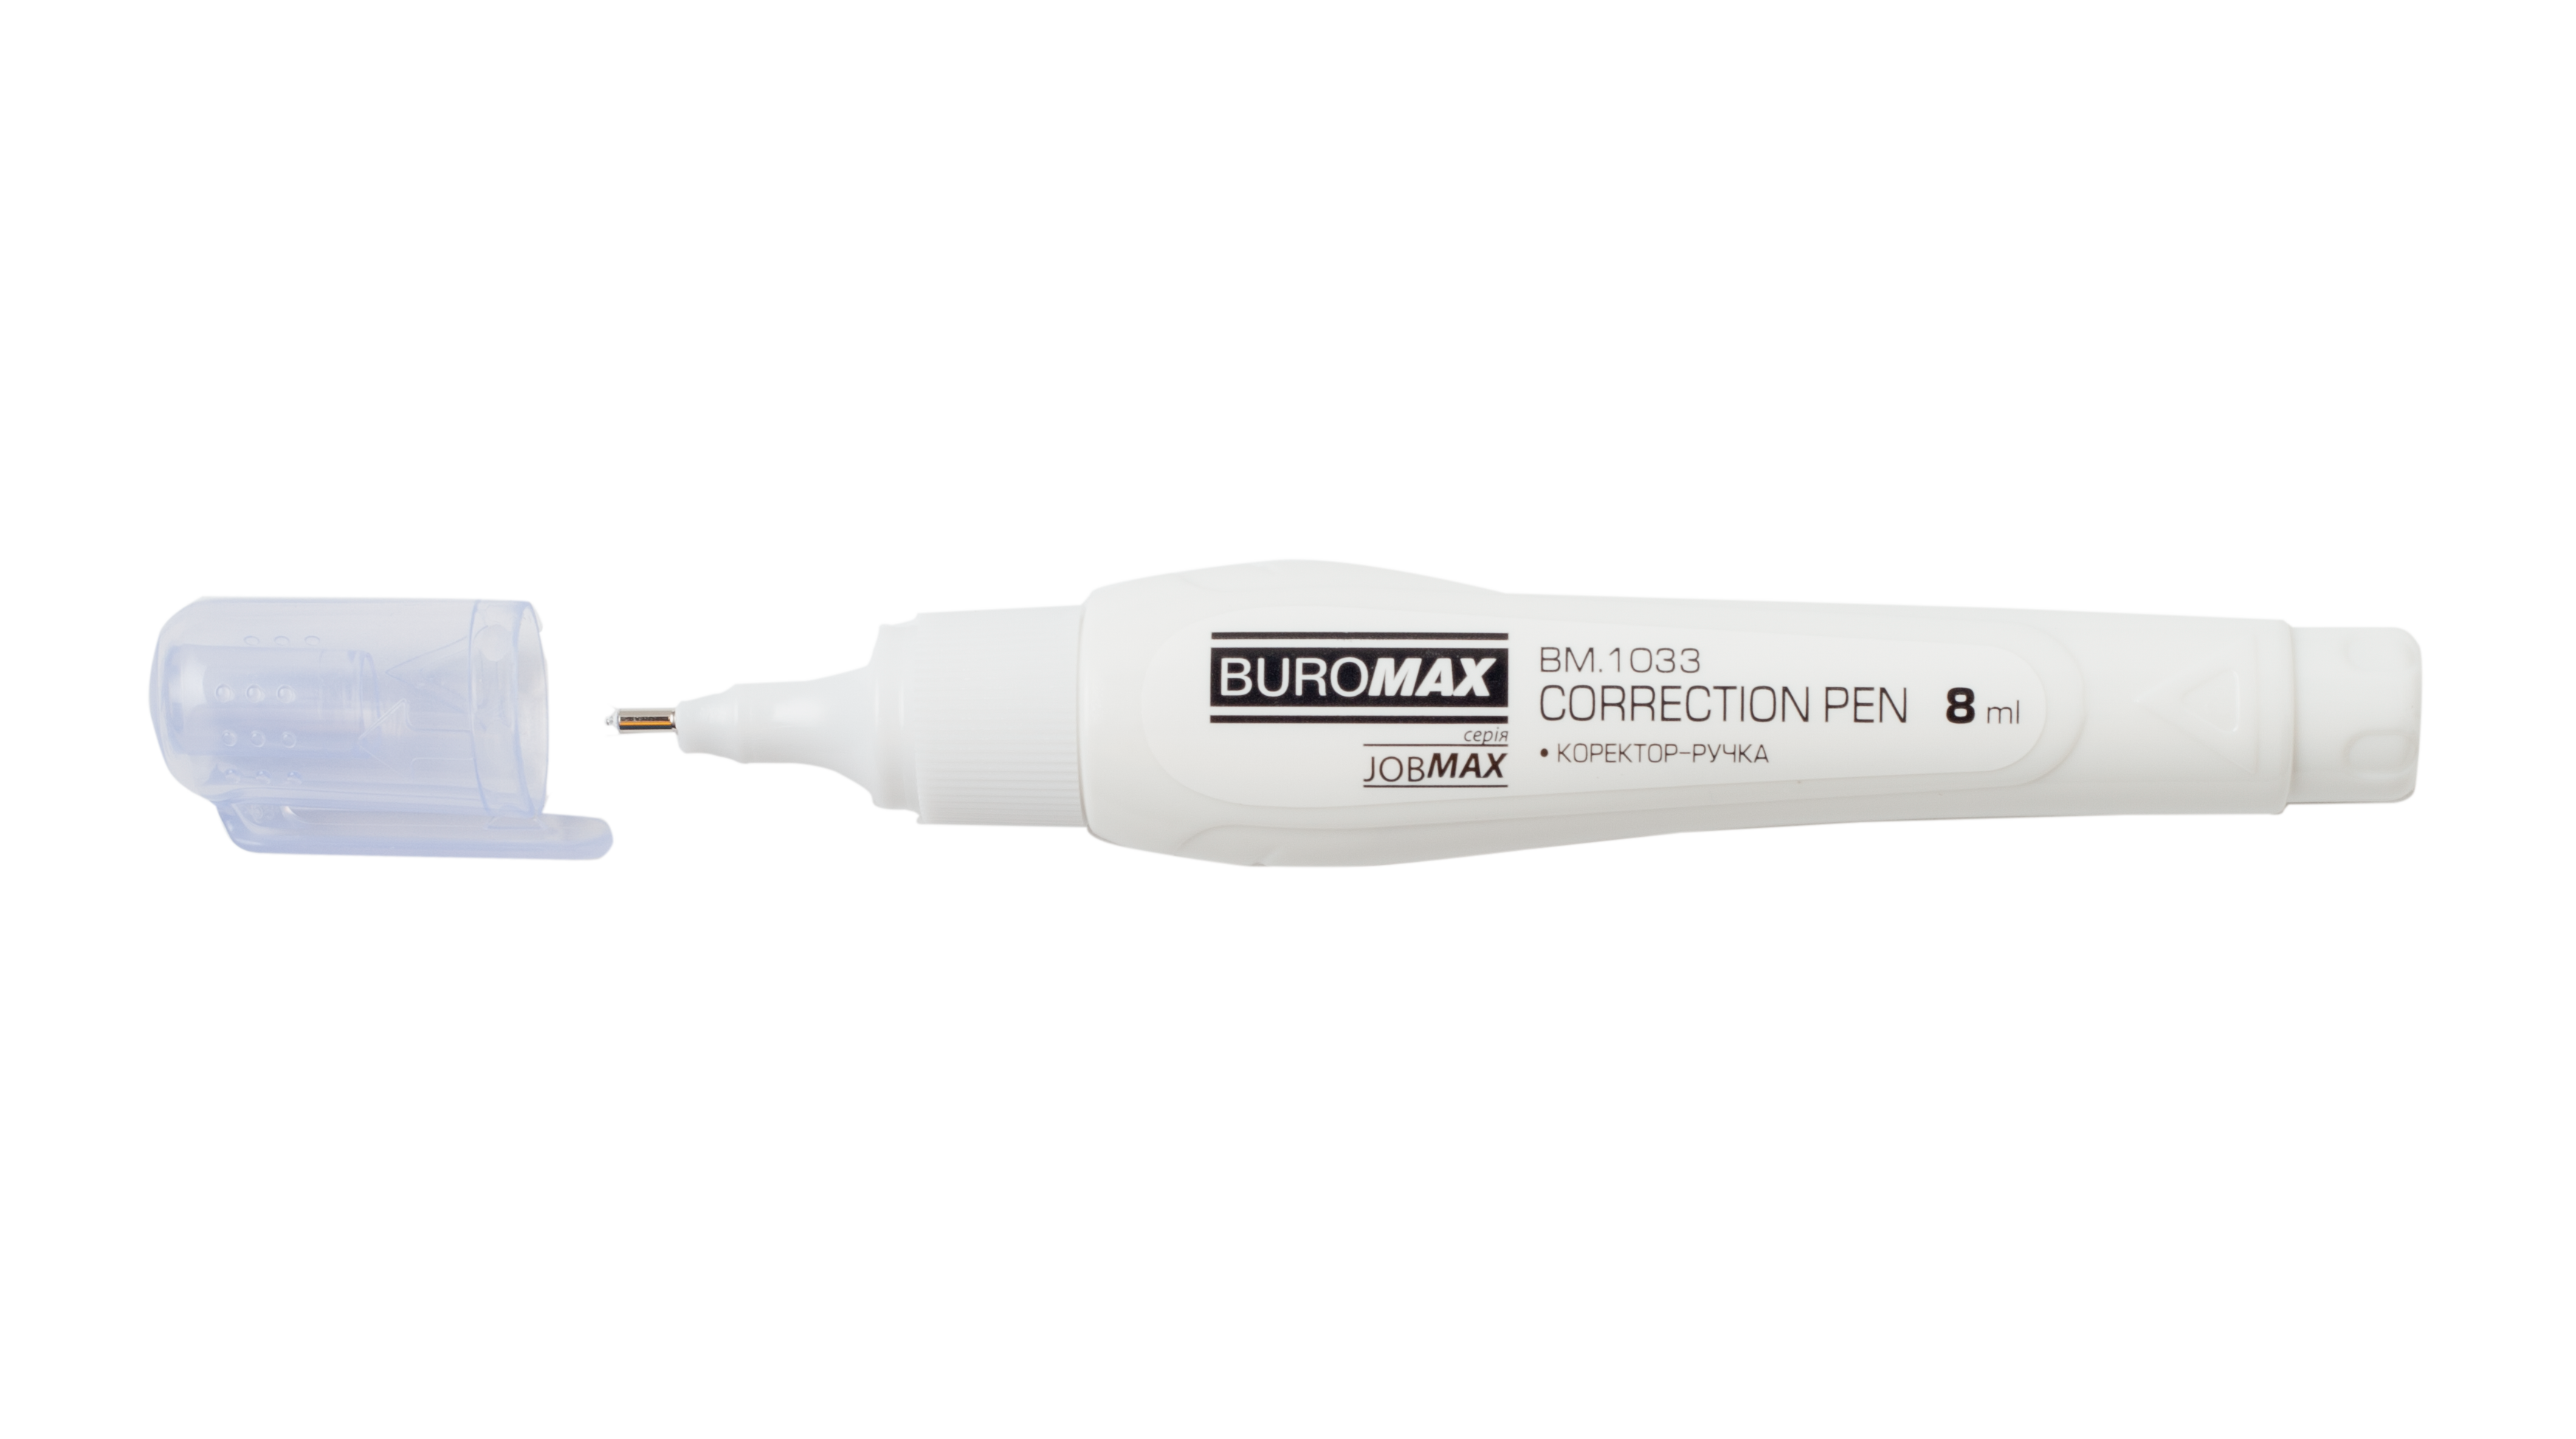 Корректор-ручка Buromax Jobmax, 8 мл (BM.1033) - фото 2